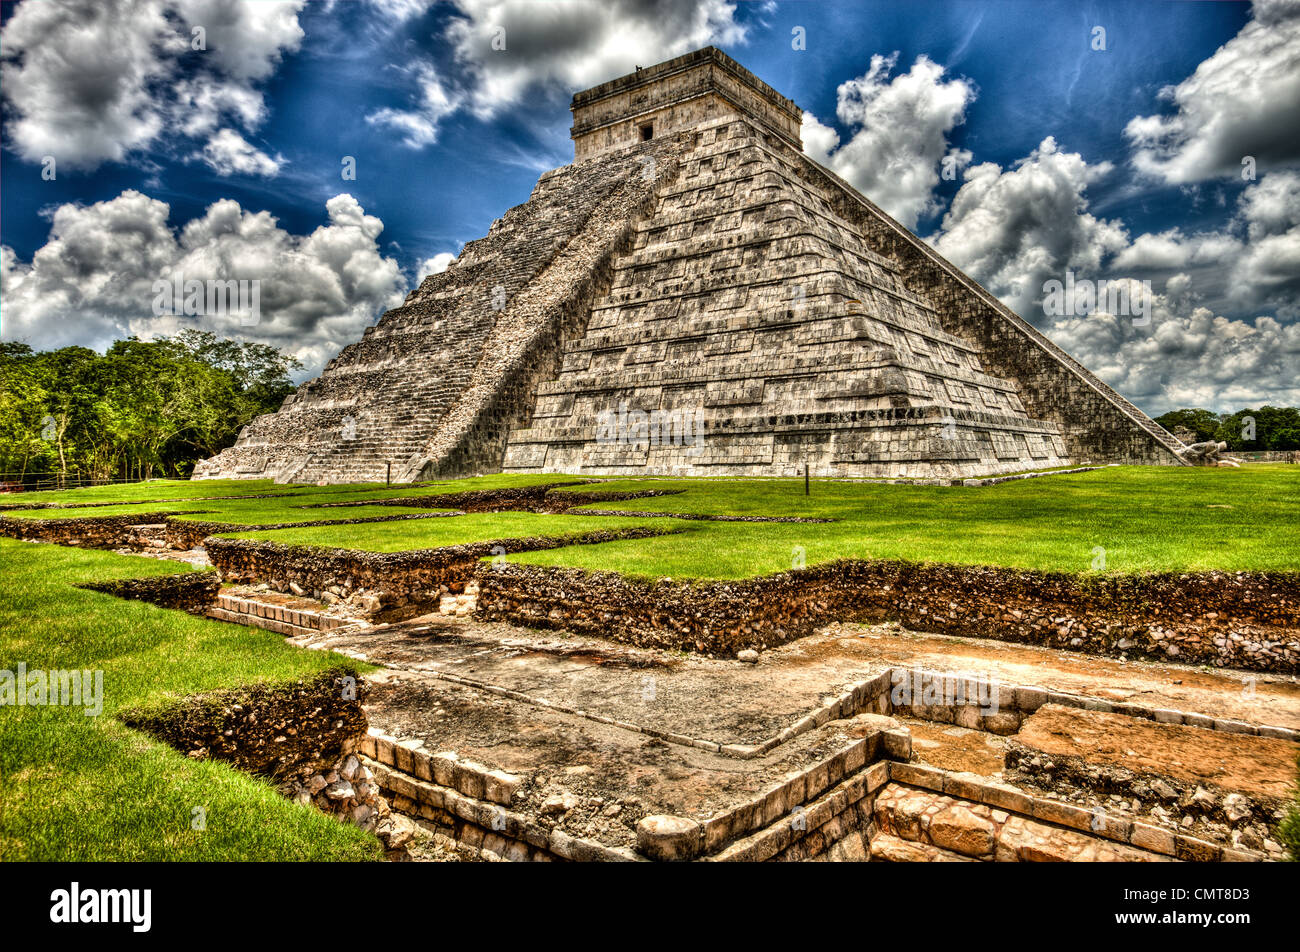 Chichen Itza, El Castillo (Kukulcán), Maya sitio histórico, estado de Yucatán, México, La pirámide fue construida para los propósitos astronómicos. La construcción de la pirámide de Kukulcán en Chichén Itzá fue planificada para que cada equinoccio el sol moribundo arrojaría una sombra de una serpiente retorciéndose hacia abajo los escalones de la pirámide. Cada año, más de 40.000 personas hacen el viaje a la gran pirámide para mirar con asombro como las serpientes diamond respaldado cuerpo aparece lentamente.Si ponernos frente a los pies del templo y gritar el eco vuelve como un grito punzante. Asimismo, una persona de pie en el peldaño superior puede hablar en una norma Foto de stock